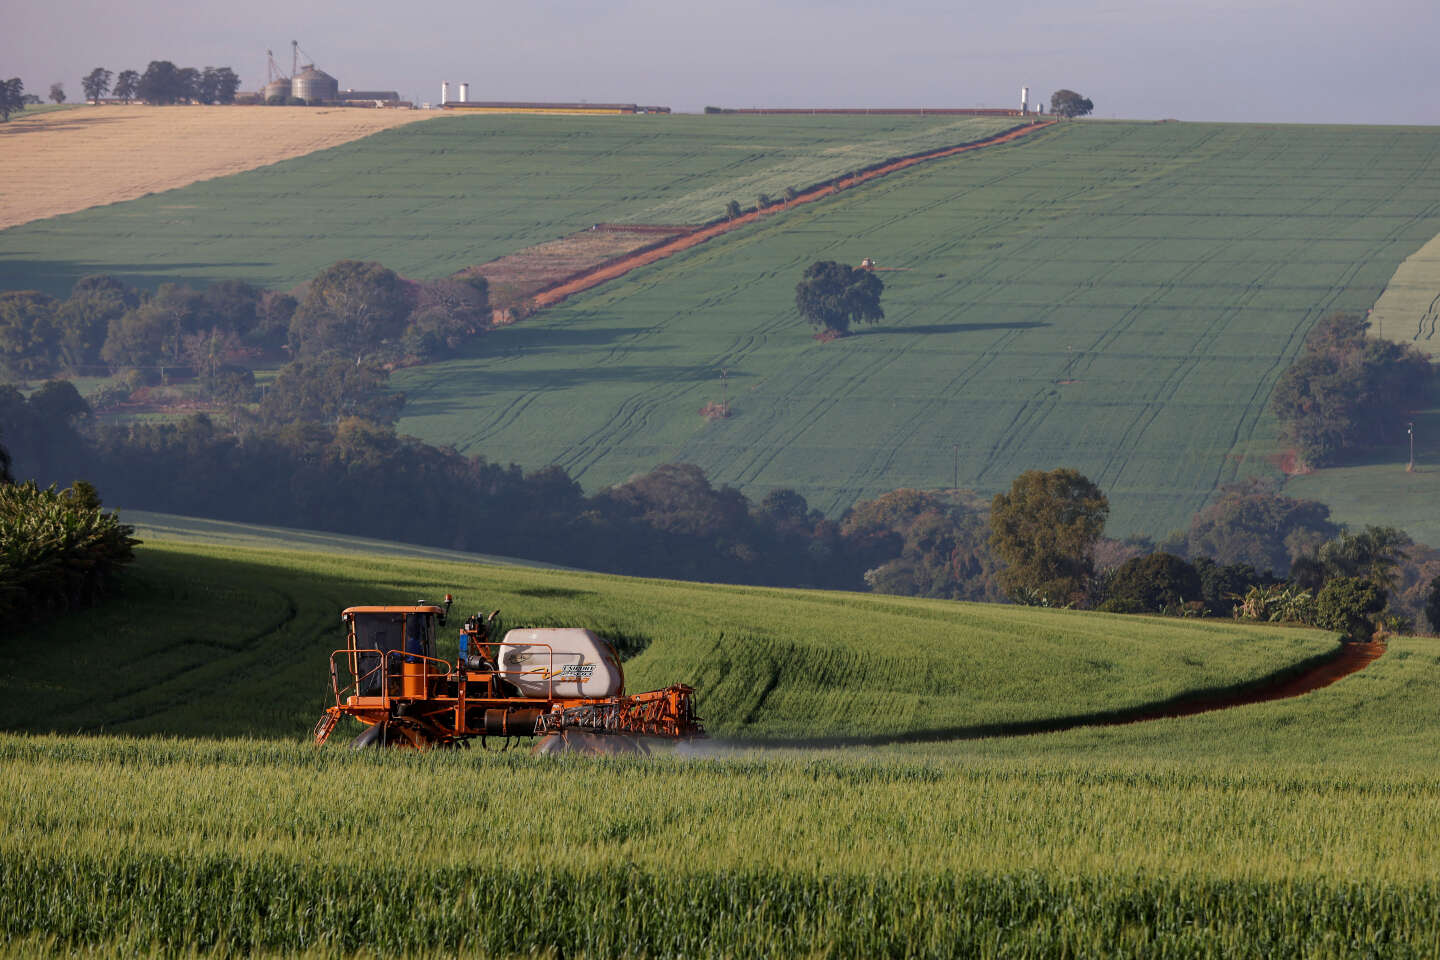 Francia sigue exportando miles de toneladas de pesticidas ultratóxicos pese a la prohibición de esta práctica